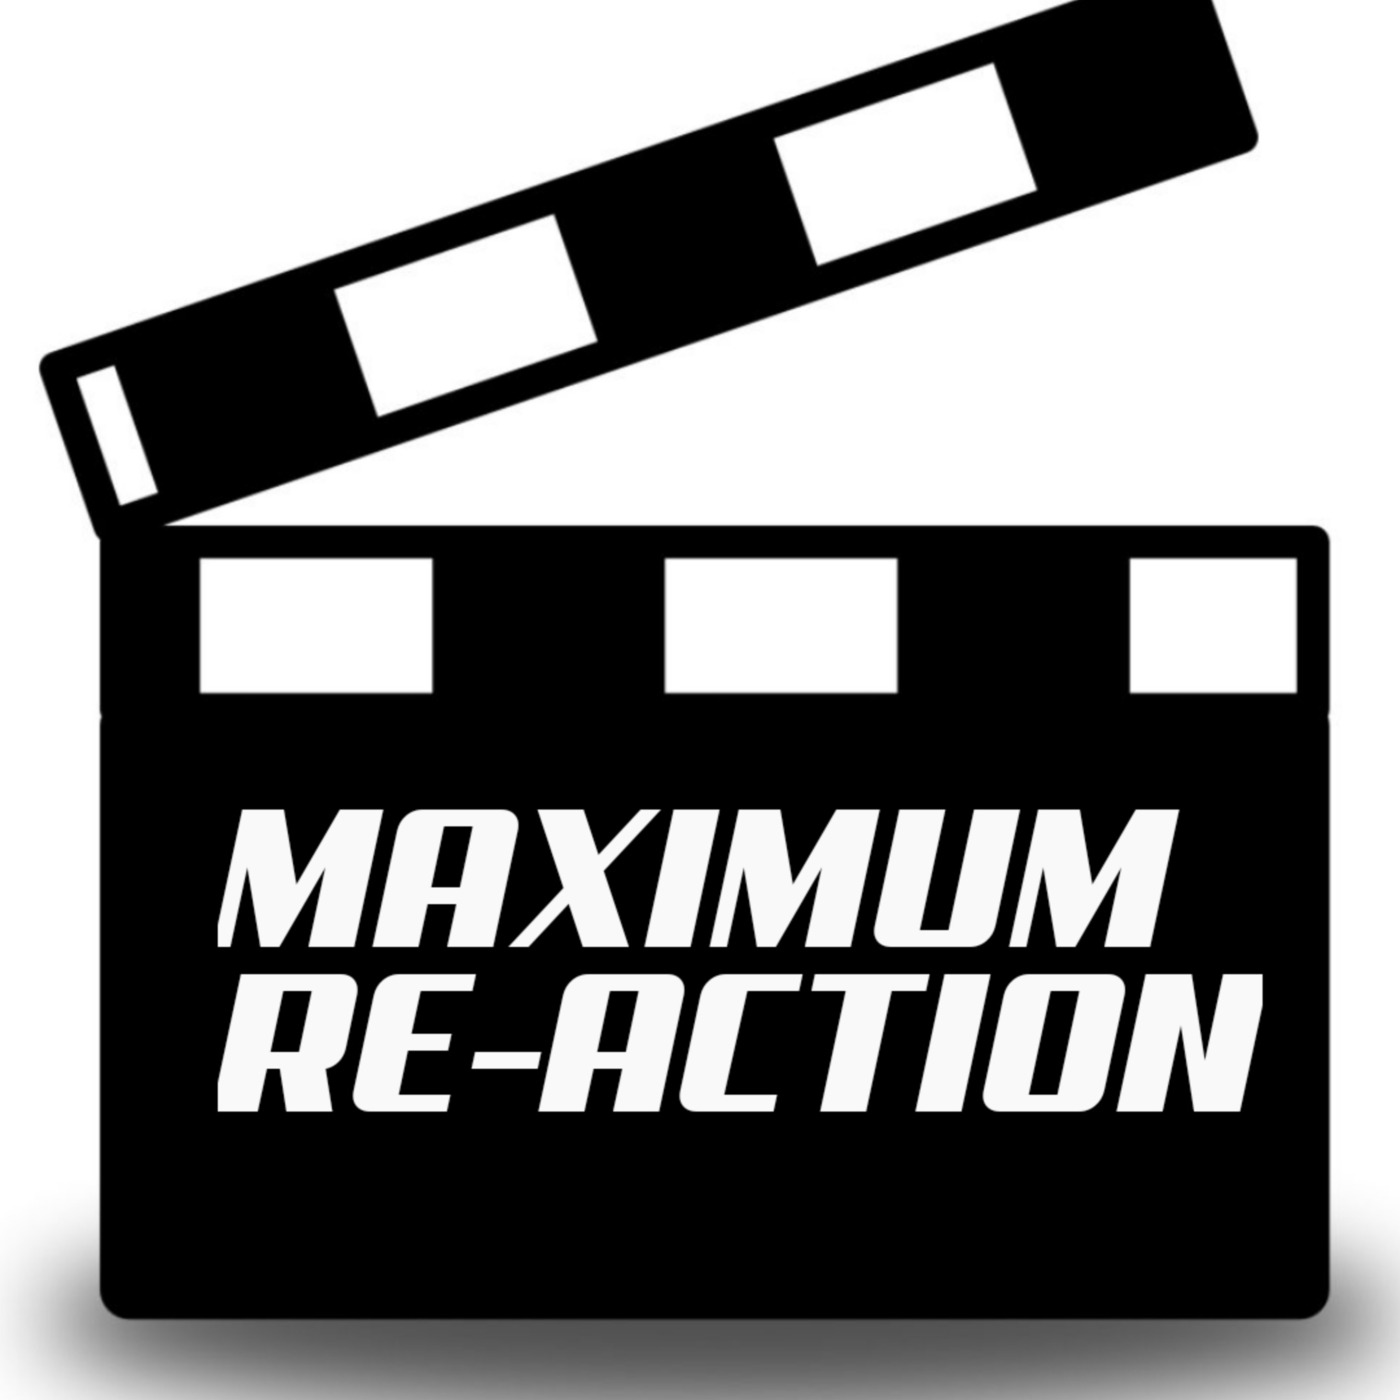 Maximum Re-Action!